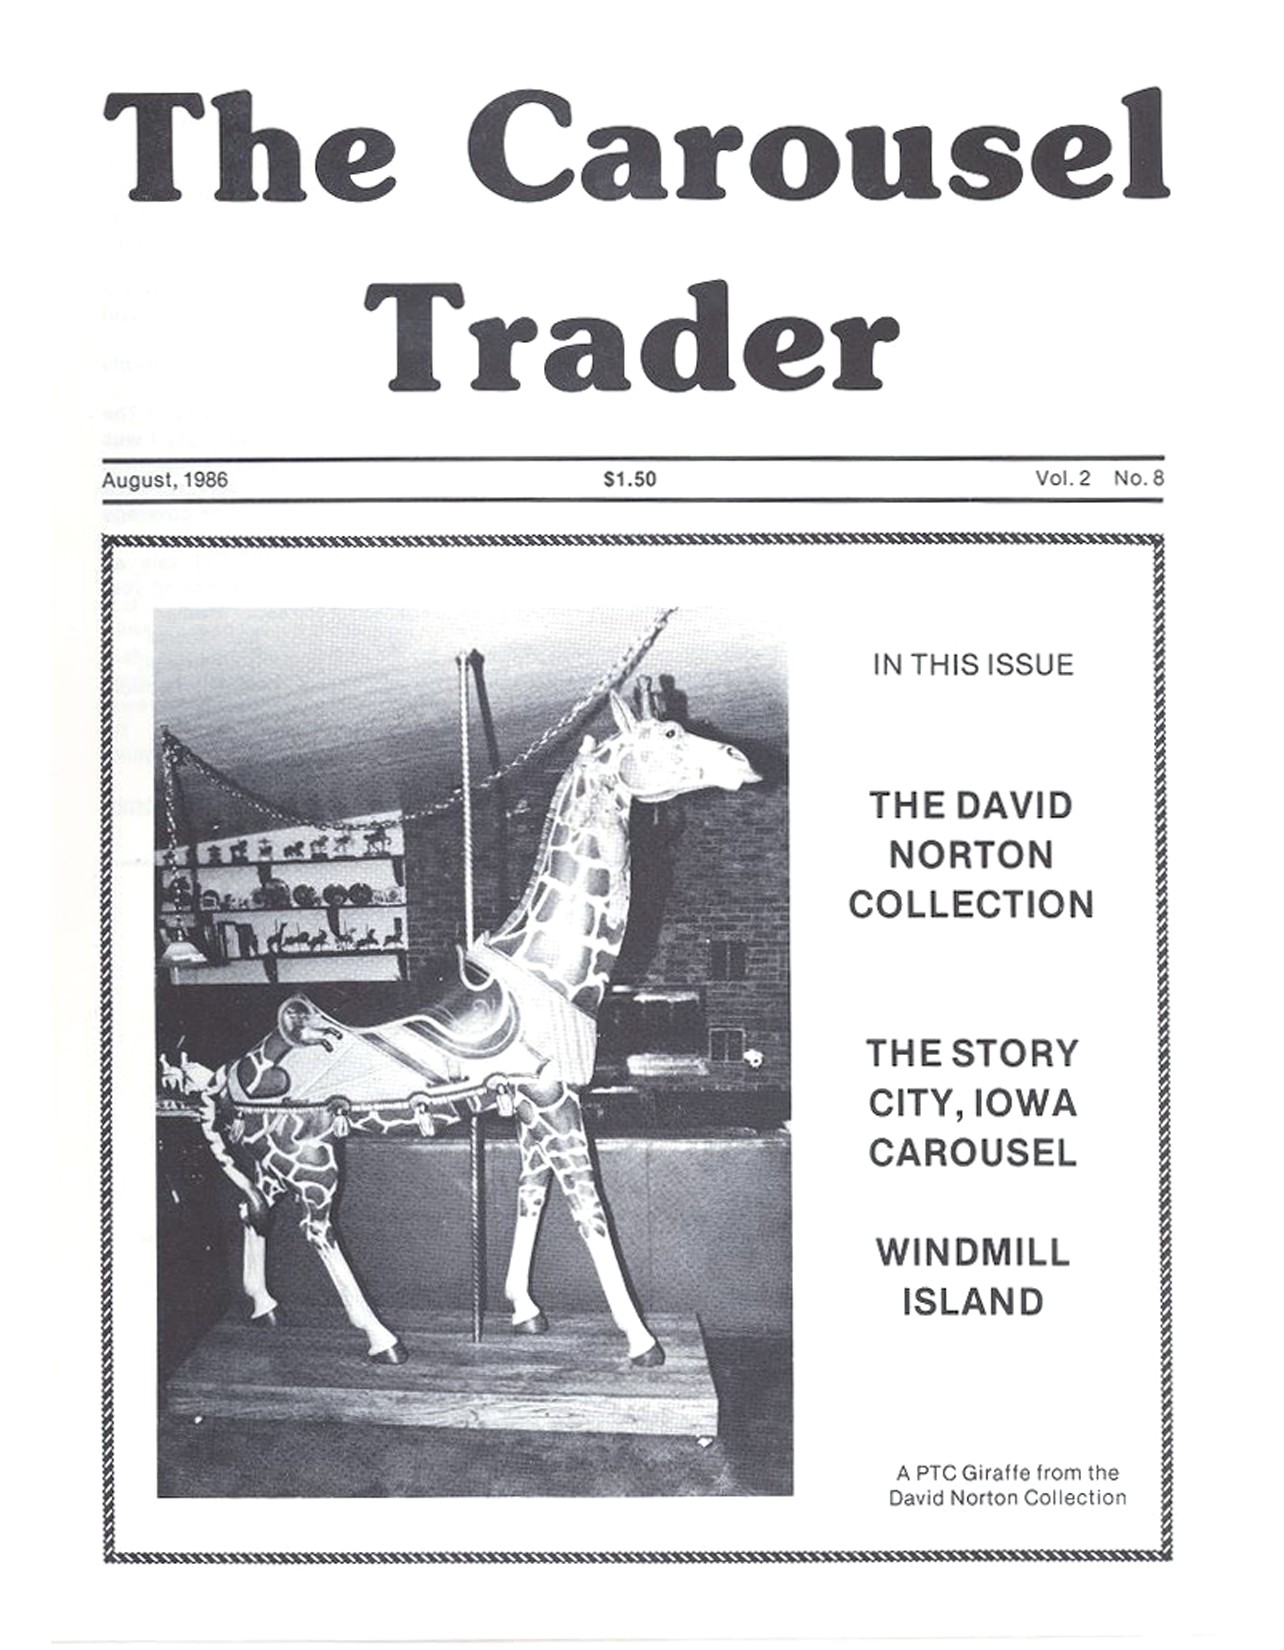 Carousel-News-08_1986-cover-PTC-giraffe-Norton-collection